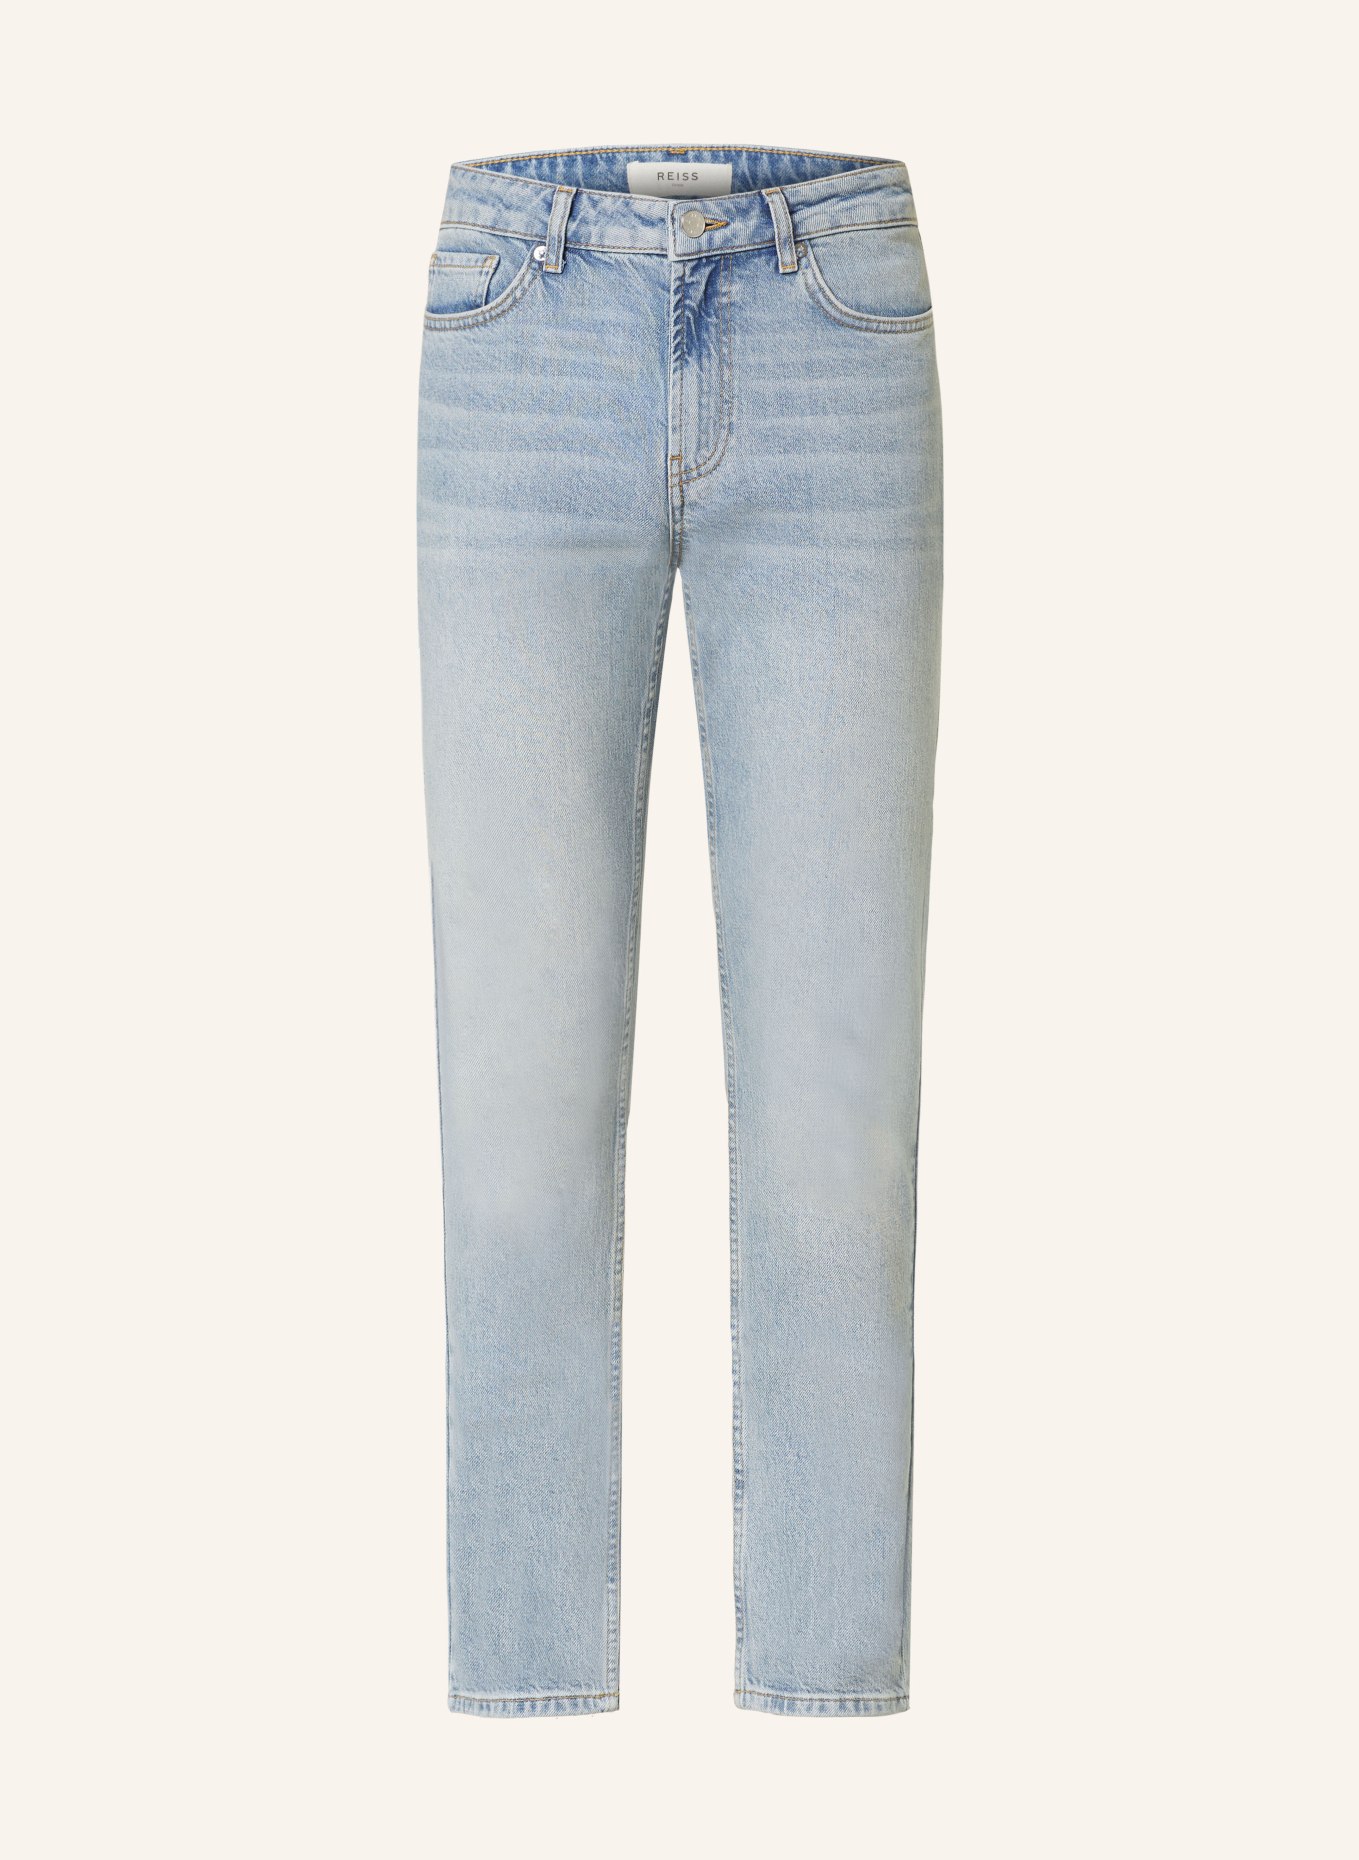 REISS Jeans Slim Fit, Farbe: 45 LIGHT BLUE (Bild 1)